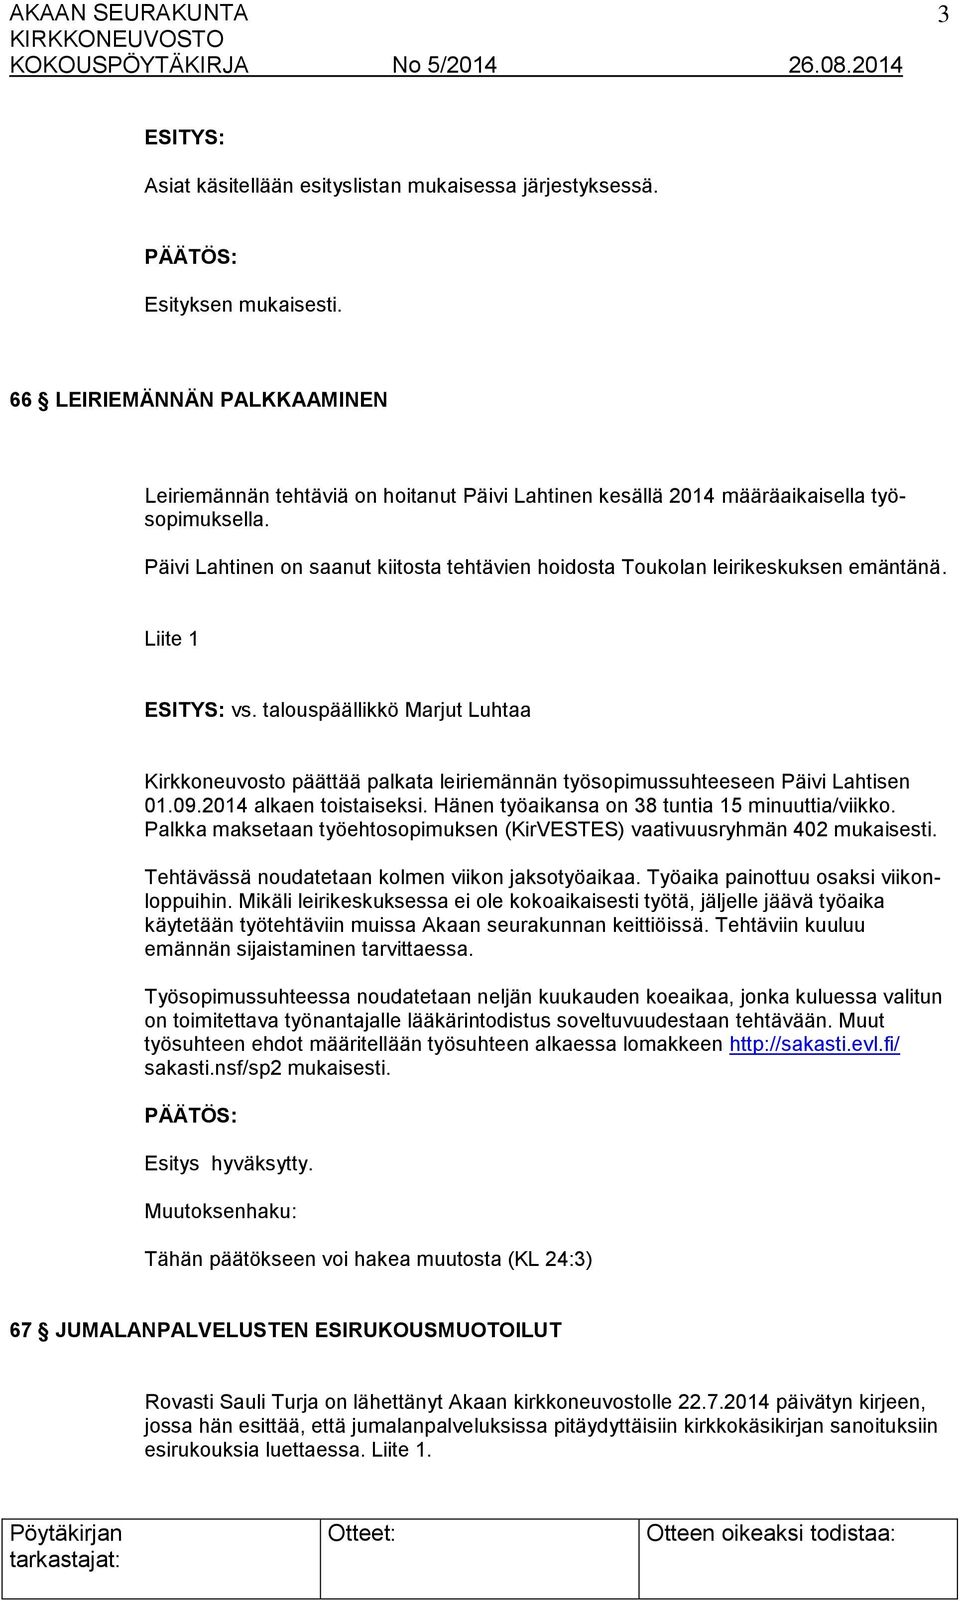 talouspäällikkö Marjut Luhtaa Kirkkoneuvosto päättää palkata leiriemännän työsopimussuhteeseen Päivi Lahtisen 01.09.2014 alkaen toistaiseksi. Hänen työaikansa on 38 tuntia 15 minuuttia/viikko.